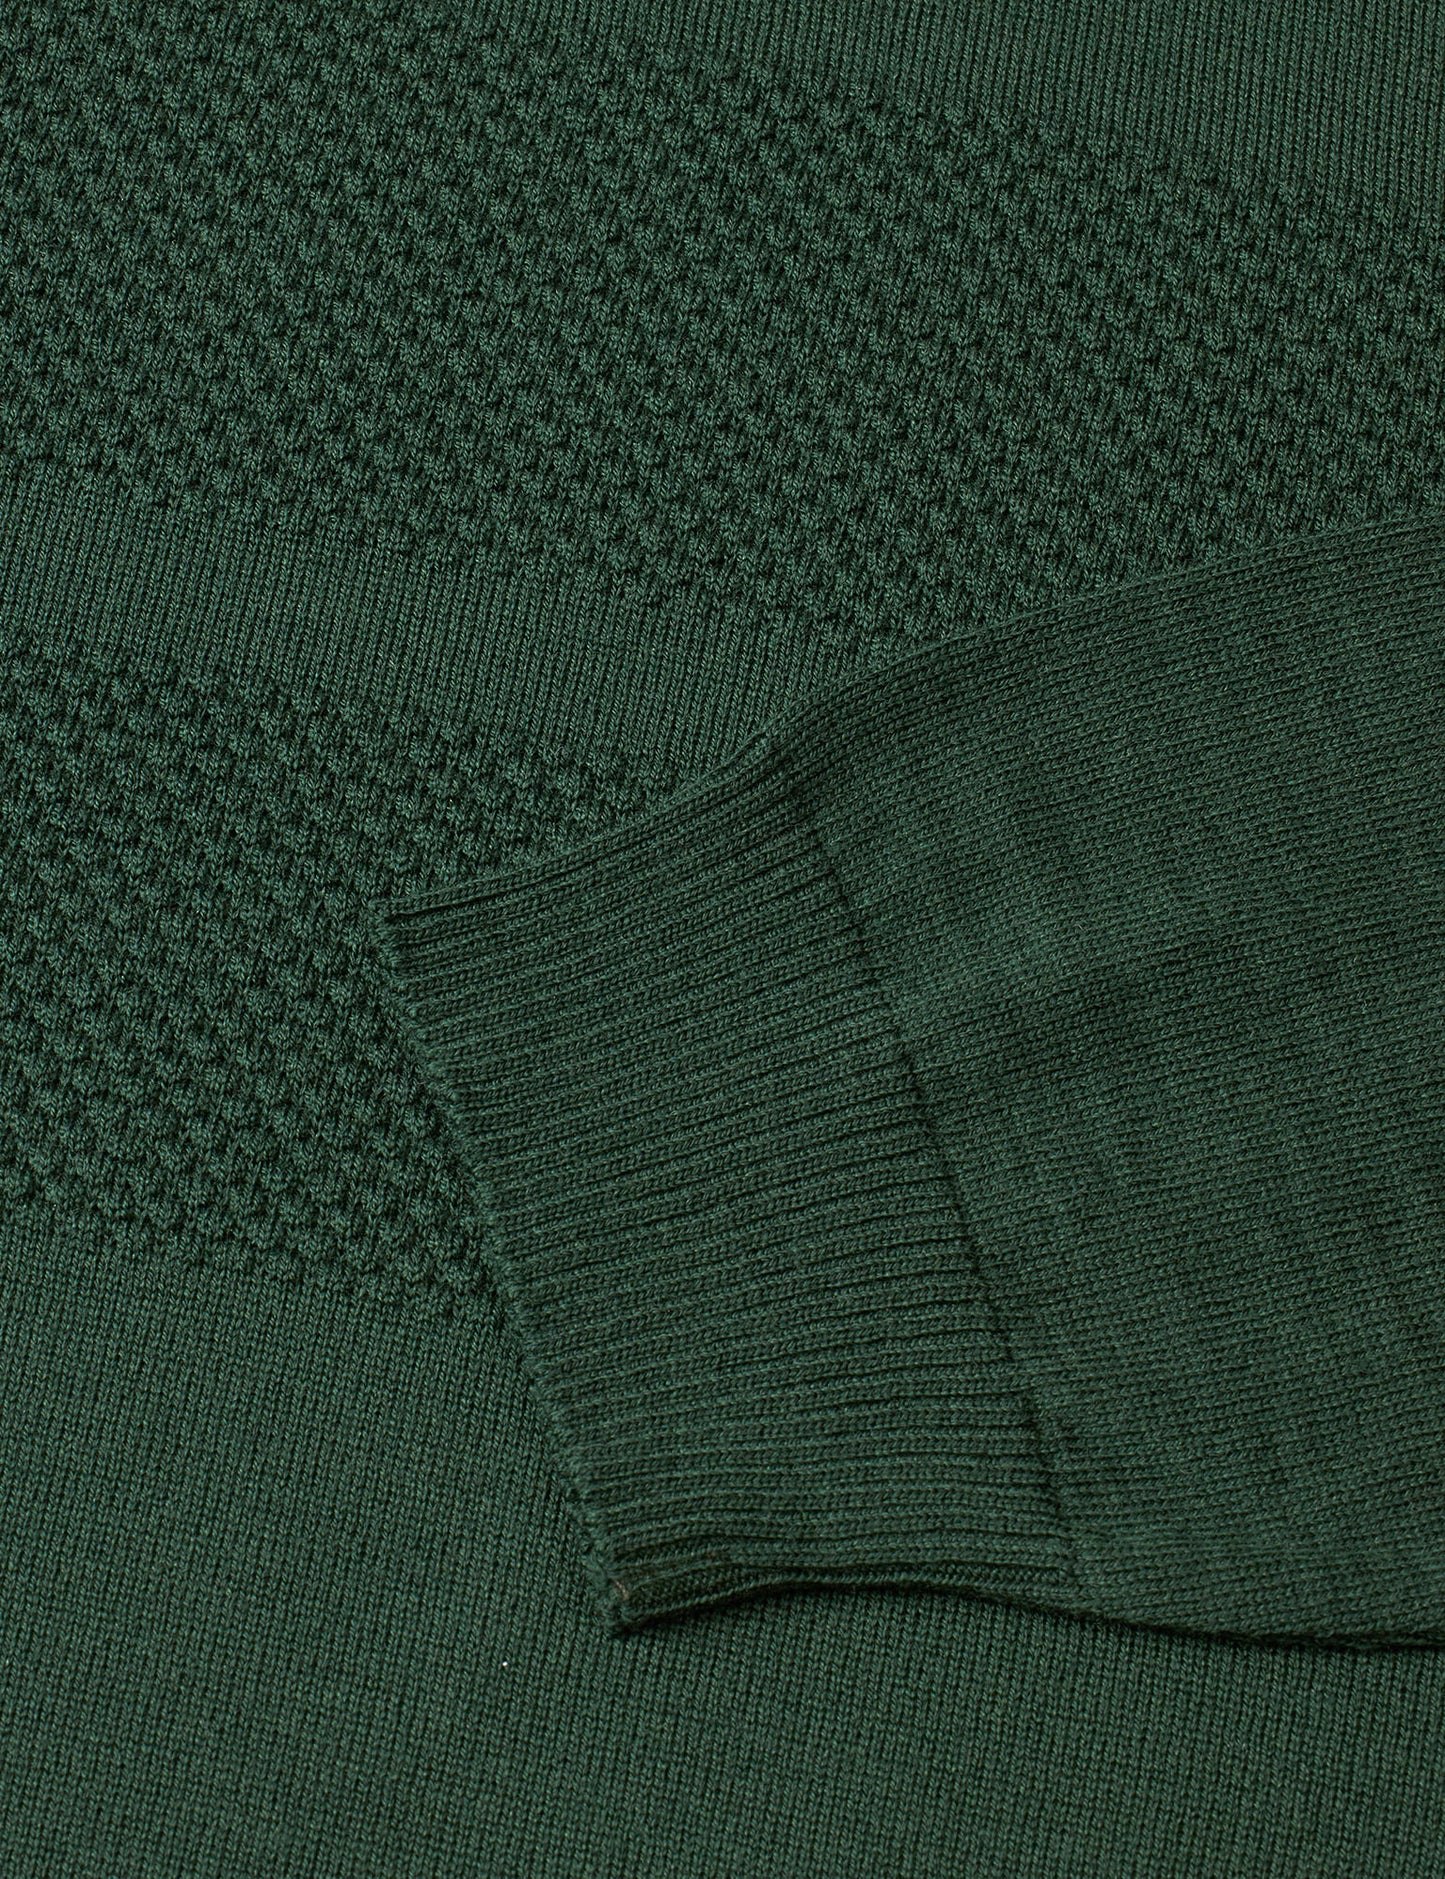 Merino Wool Klap Knit, Darkest Spruce